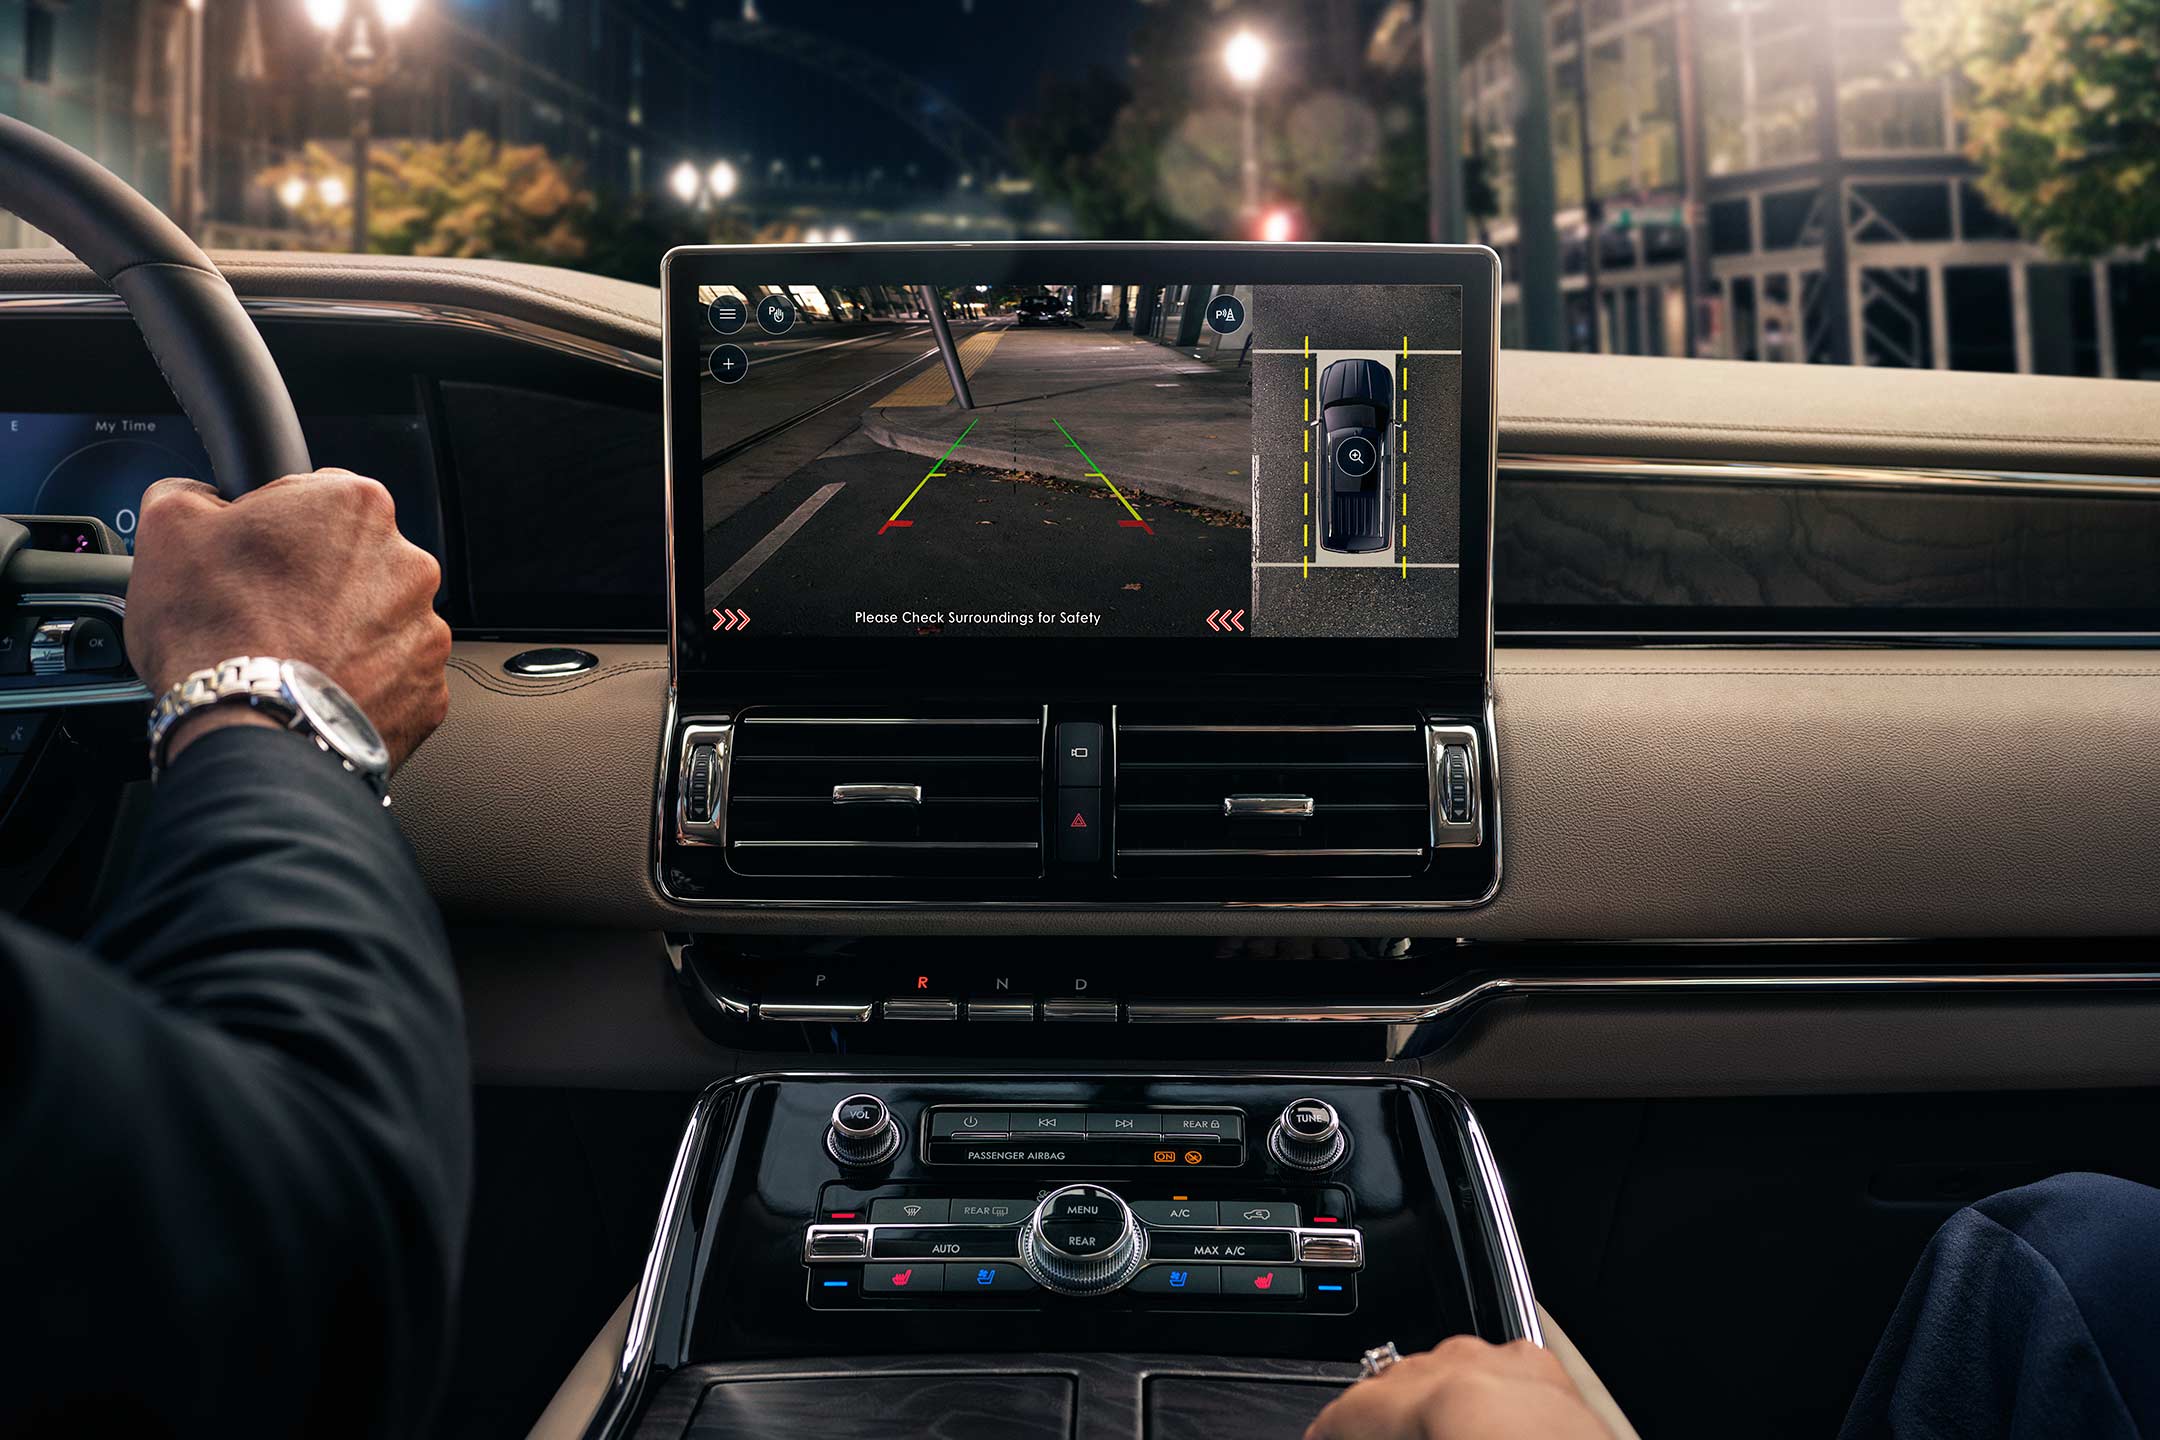 La pantalla para la cámara de 360 grados en la pantalla central muestra la vista trasera y superior del vehículo.